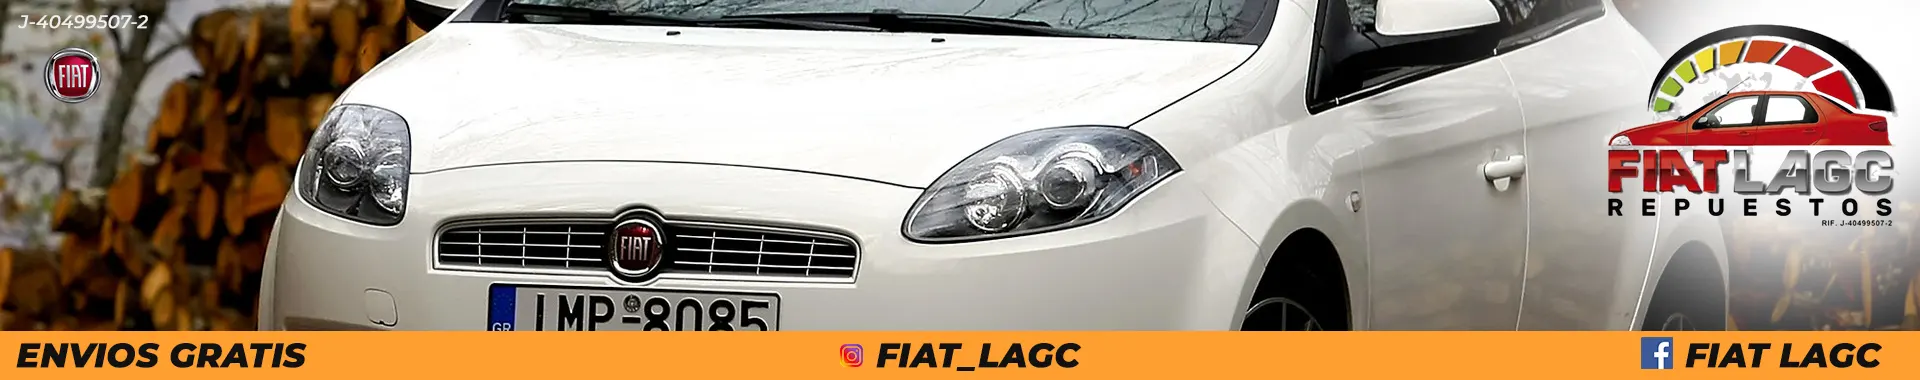 Imagen 6 del perfil de Repuestos Fiat LAGC